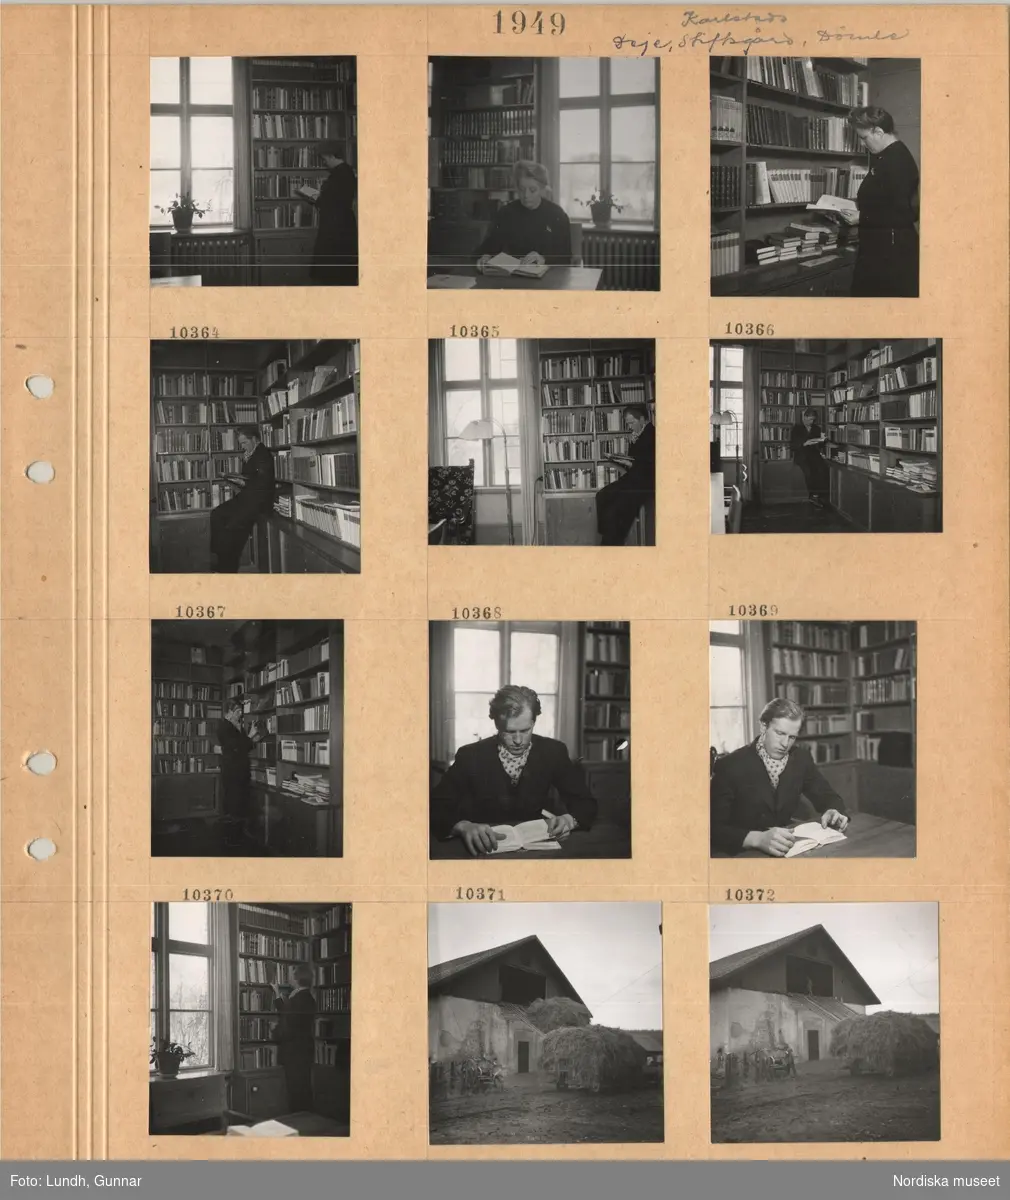 Motiv: Karlstads stiftsgård, rum med bokhyllor längs väggarna, en kvinna möjligen Ester Lundh står och tittar i en bok, kvinna sitter vid bord och läser en bok, en man står och tittar läser i en bok, en man sitter vid ett bord och läser en bok, vagn med hölass framför en lada.